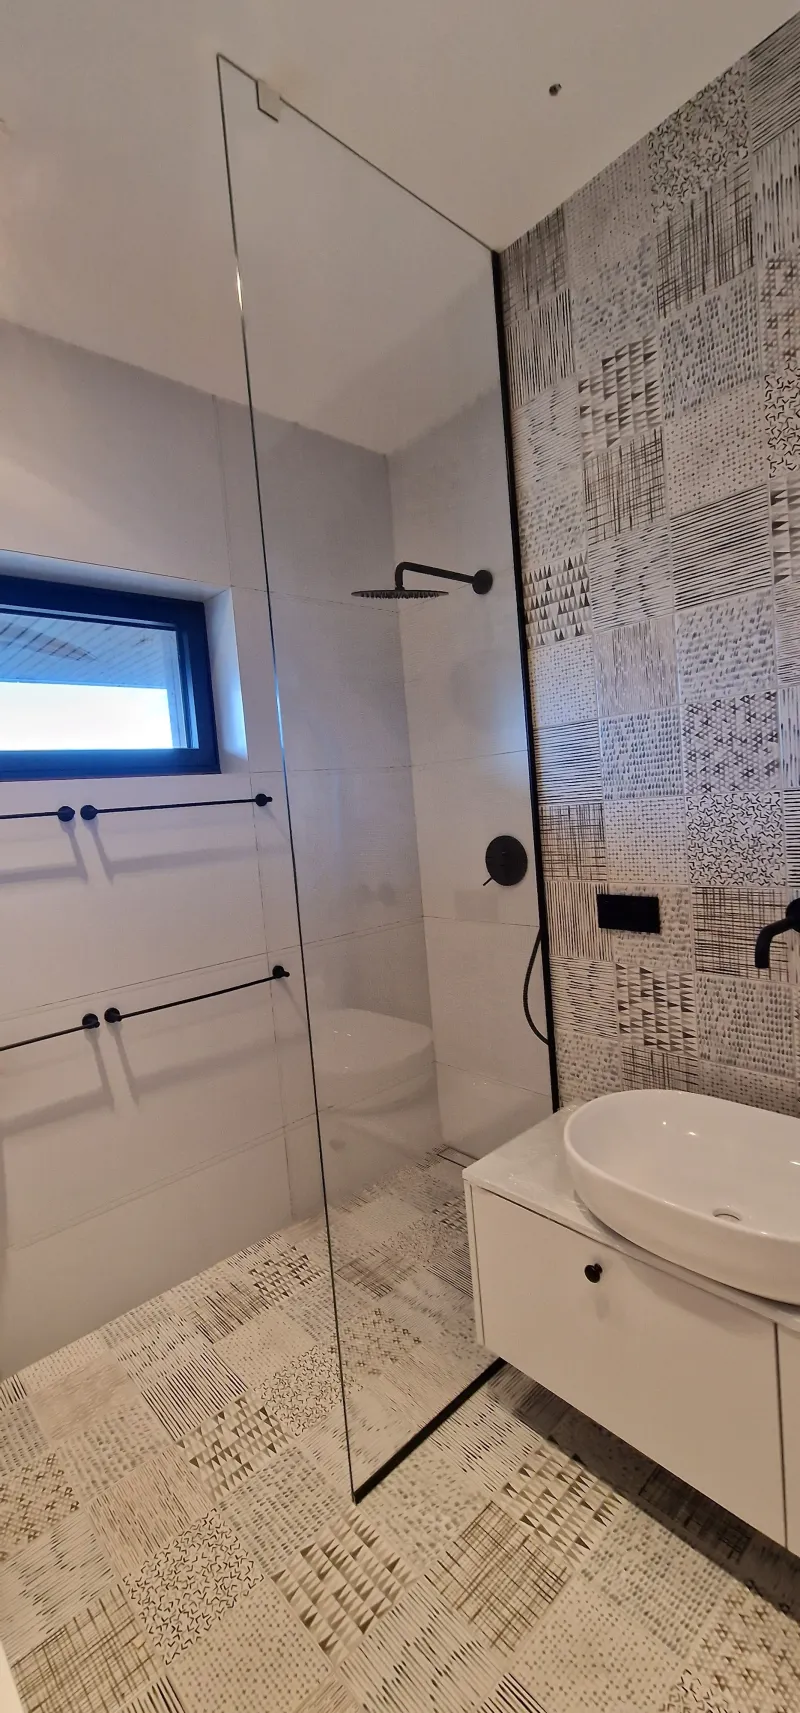 kabiny prysznicowe bielsko